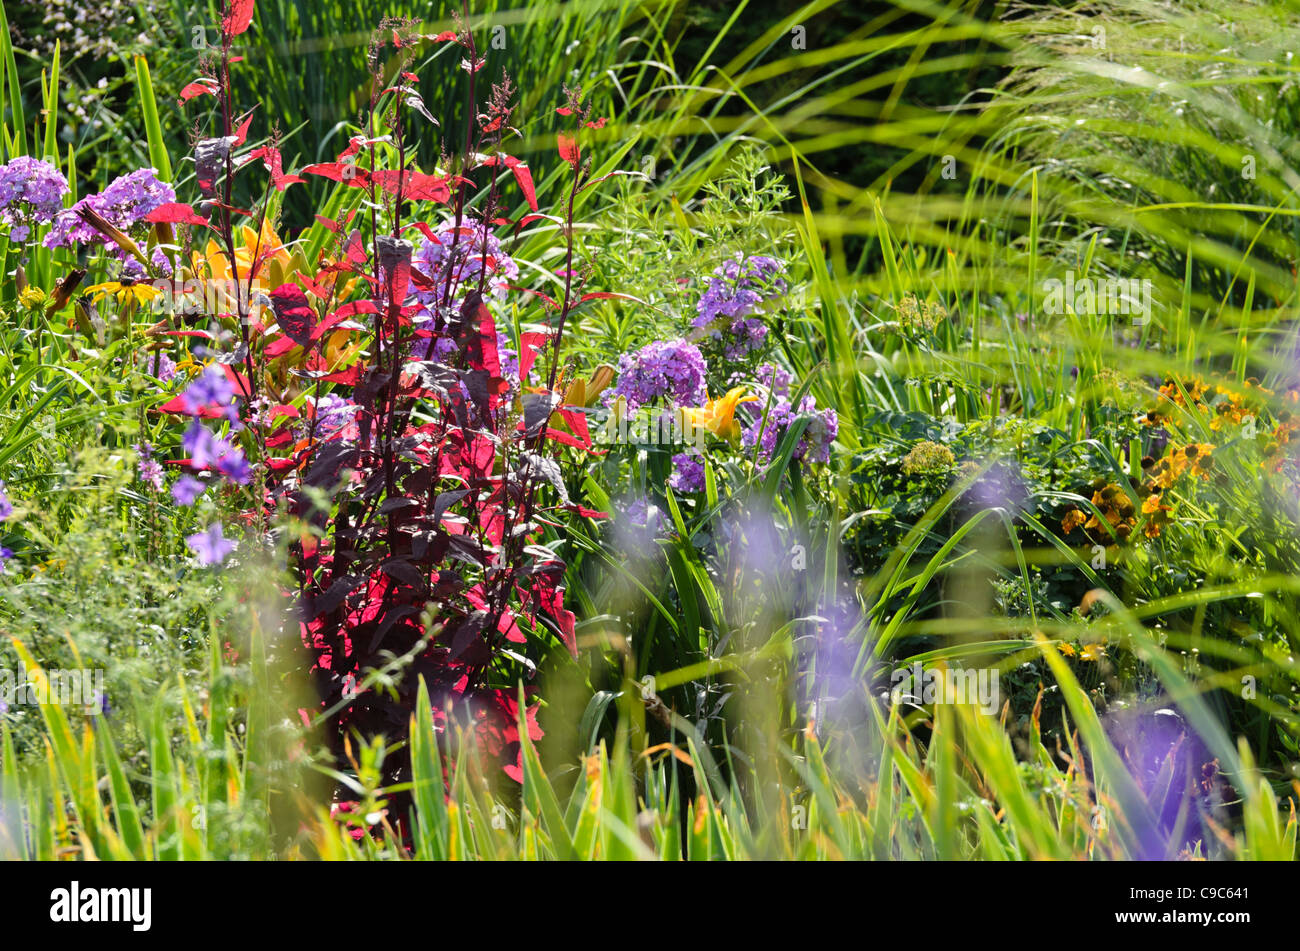 Red garden orache (Atriplex hortensis var. rubra) and garden phlox (Phlox paniculata) Stock Photo